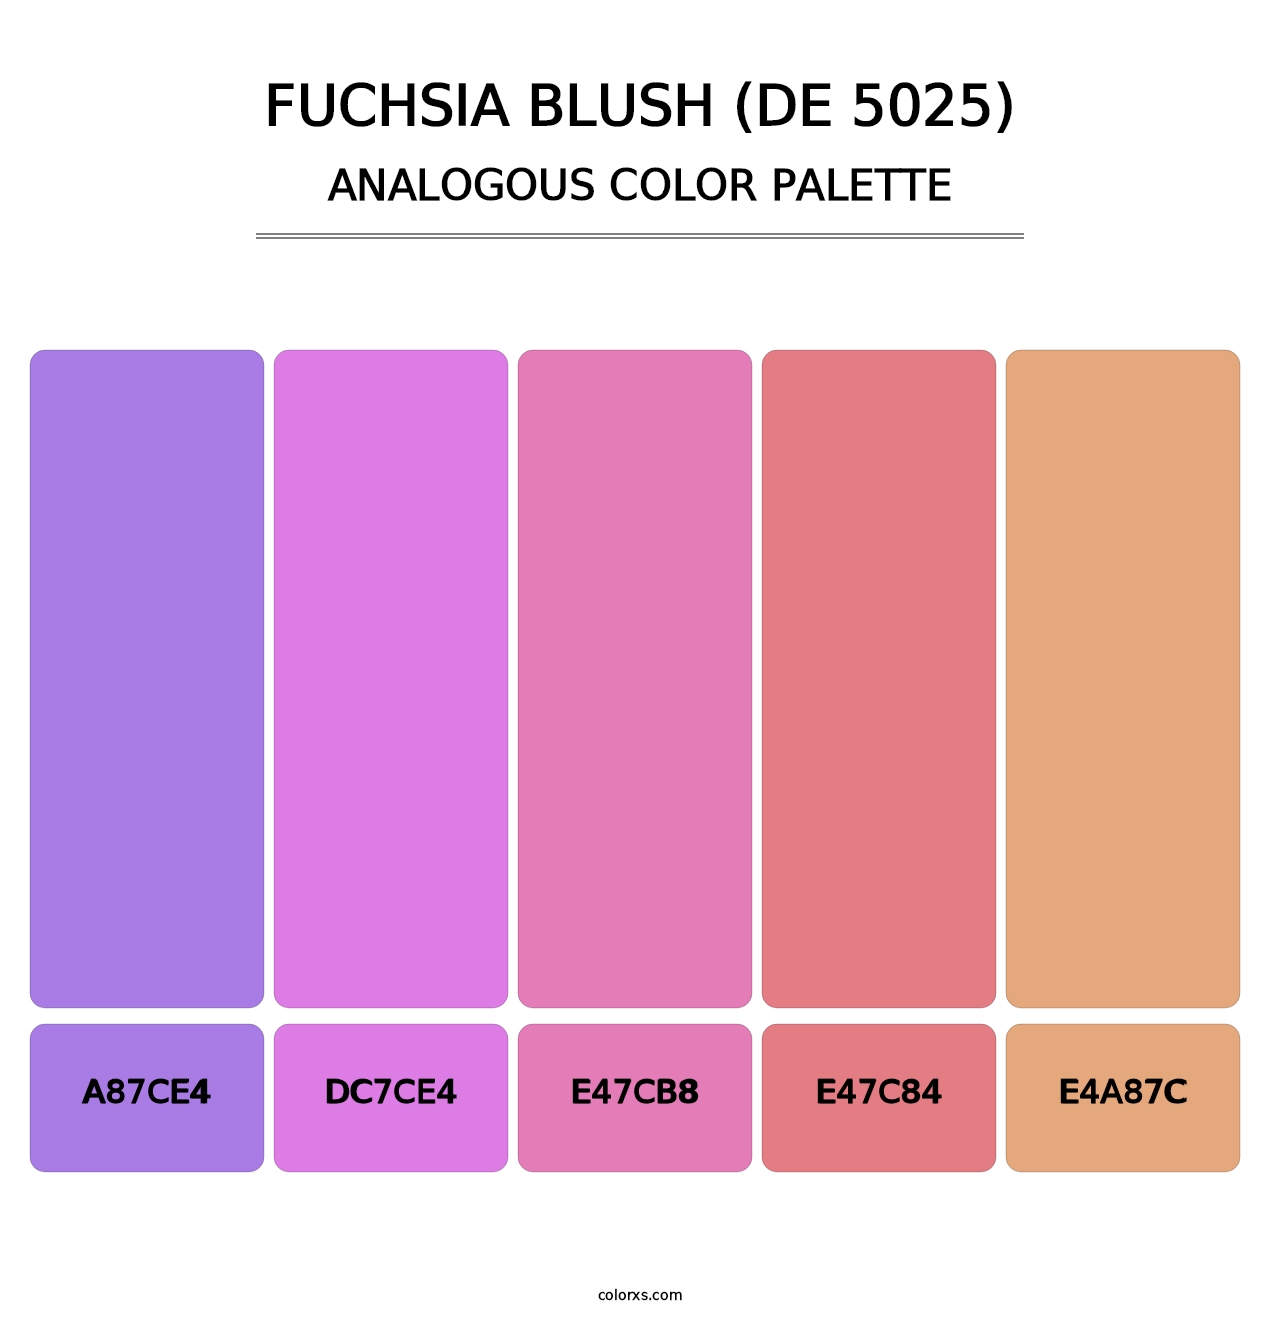 Fuchsia Blush (DE 5025) - Analogous Color Palette